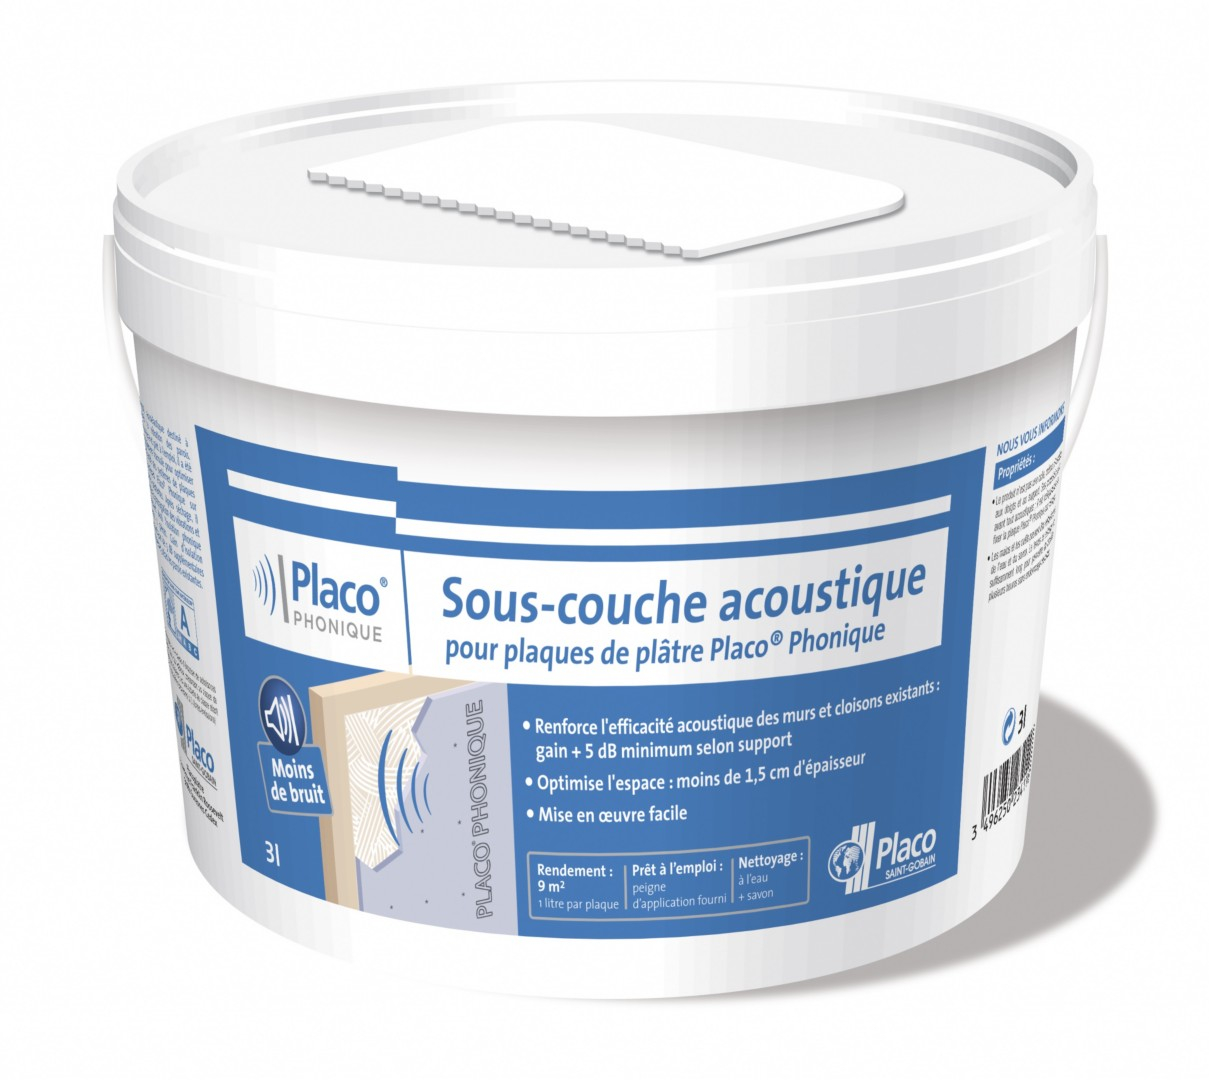 sous-couche-acoustique-pour-plaque-de-platre-3l-seau-placopl-0